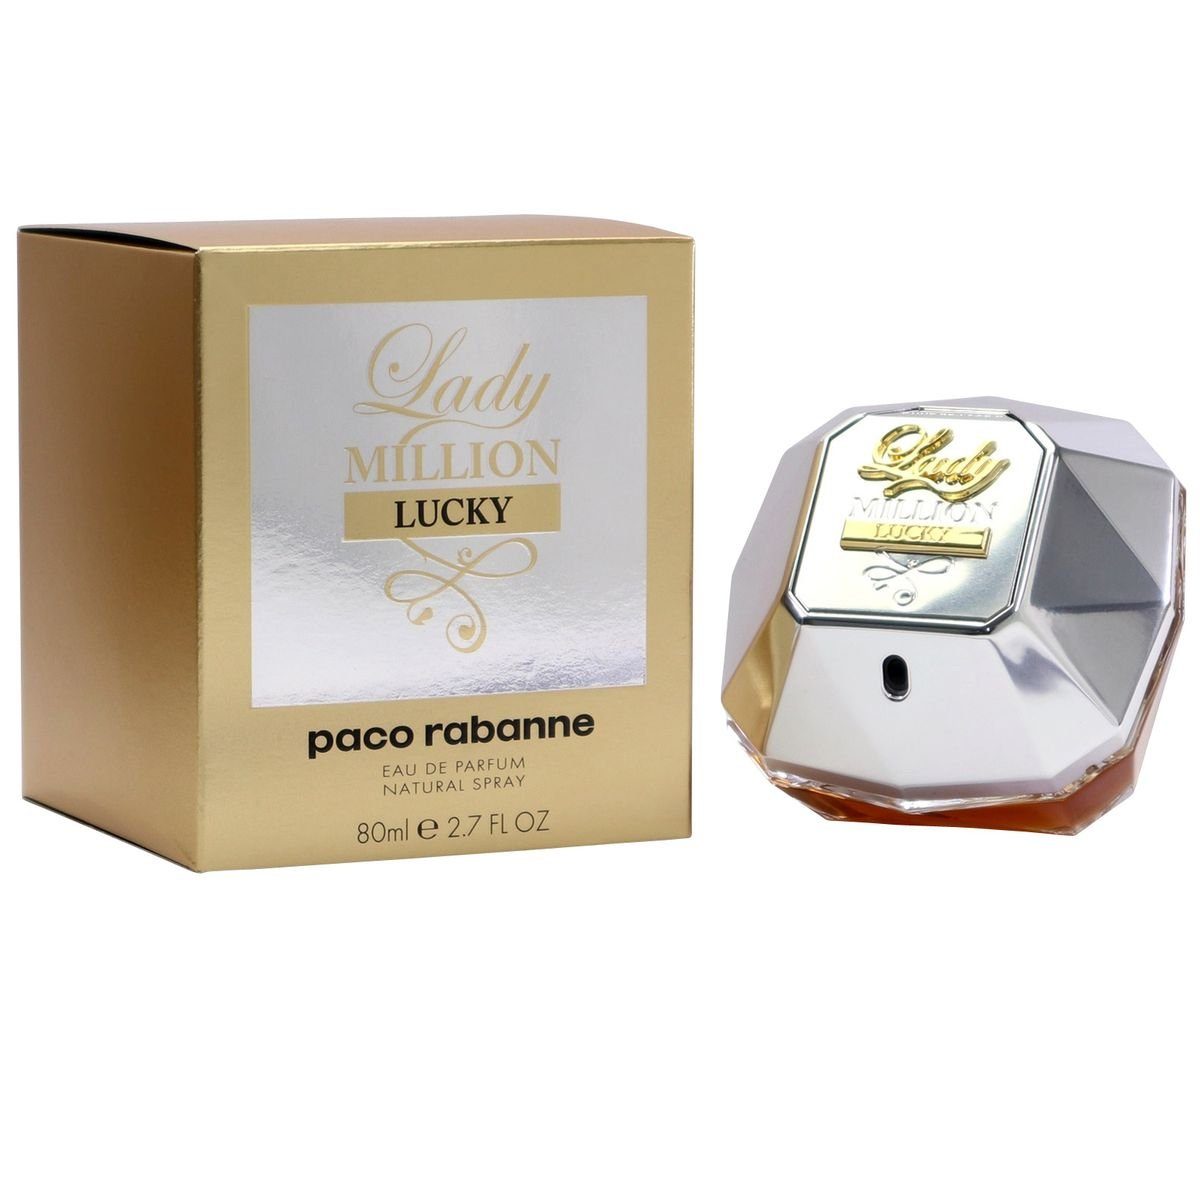 paco rabanne Eau de ml Parfum Lady Paco Spray Million Eau de Lucky Rabanne Parfum 80